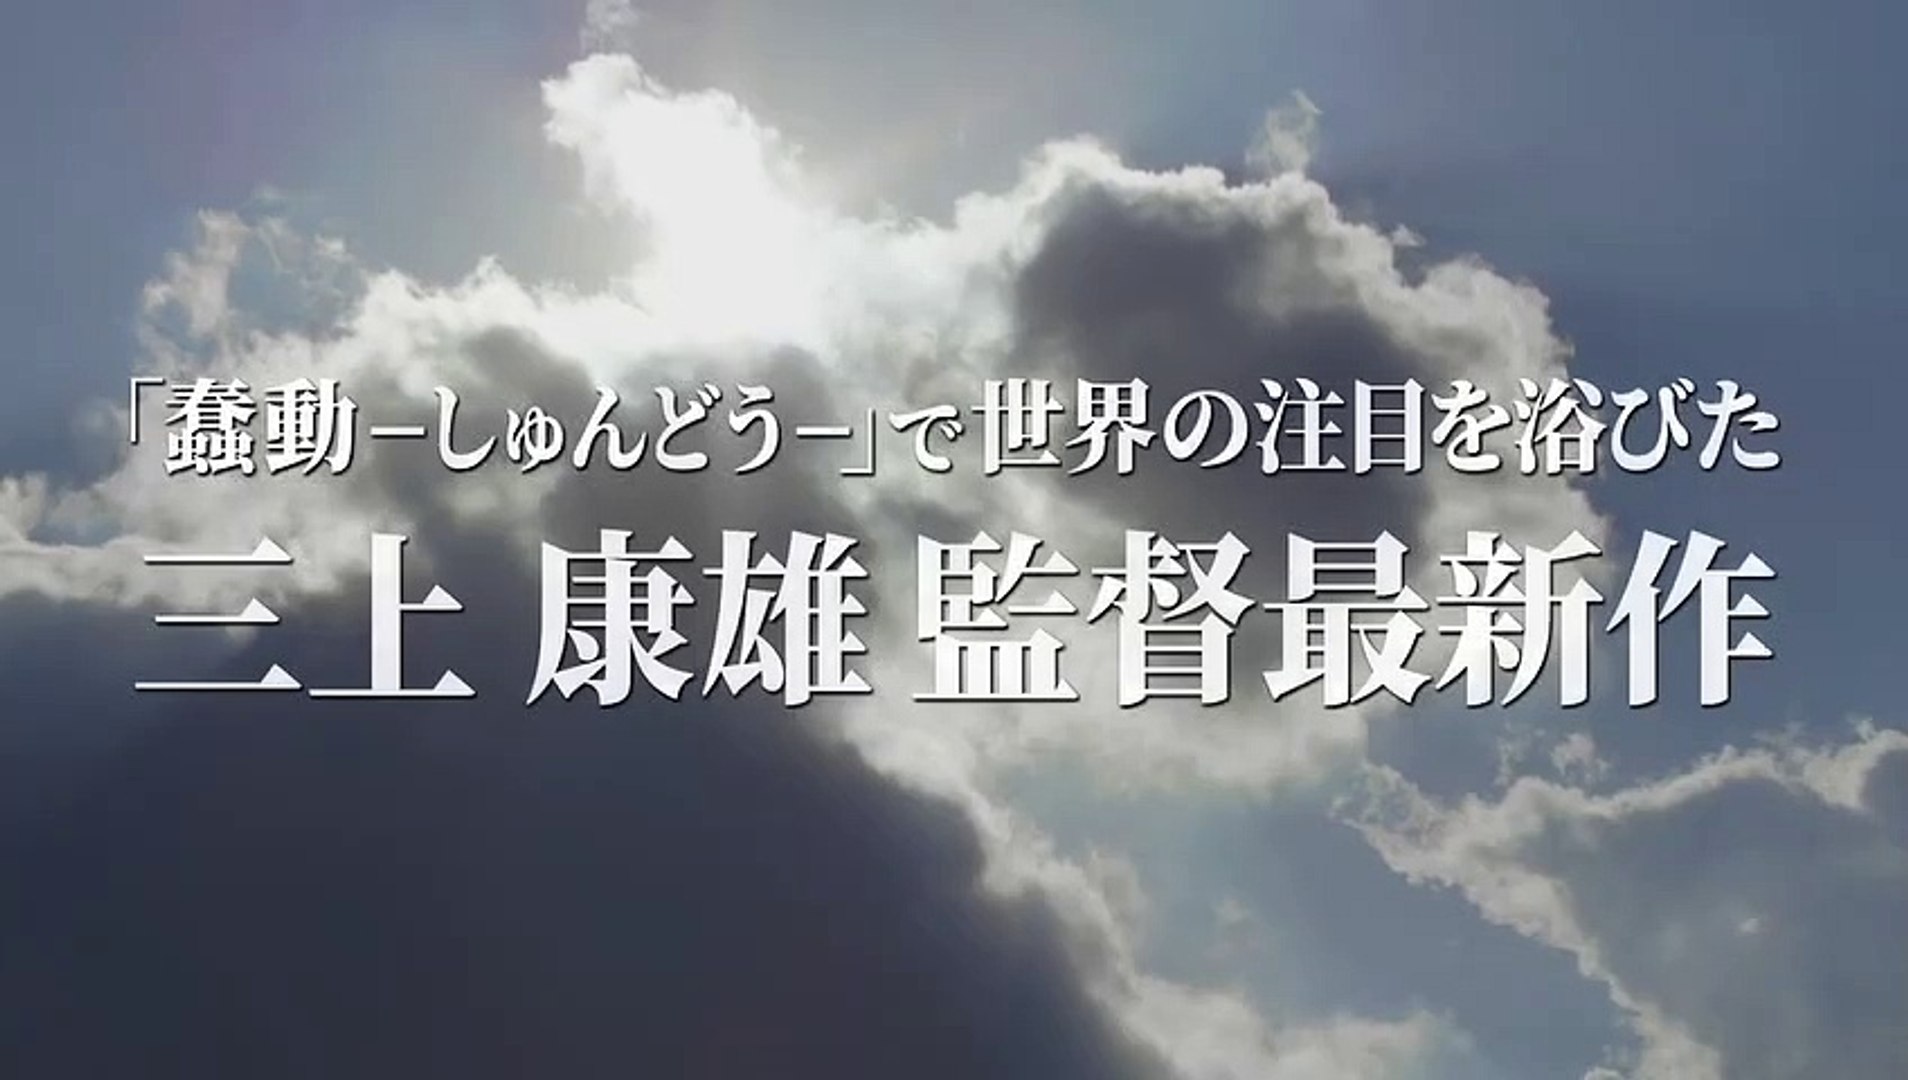 Musashi teaser trailer - Yasuo Mikami-directed chanbara